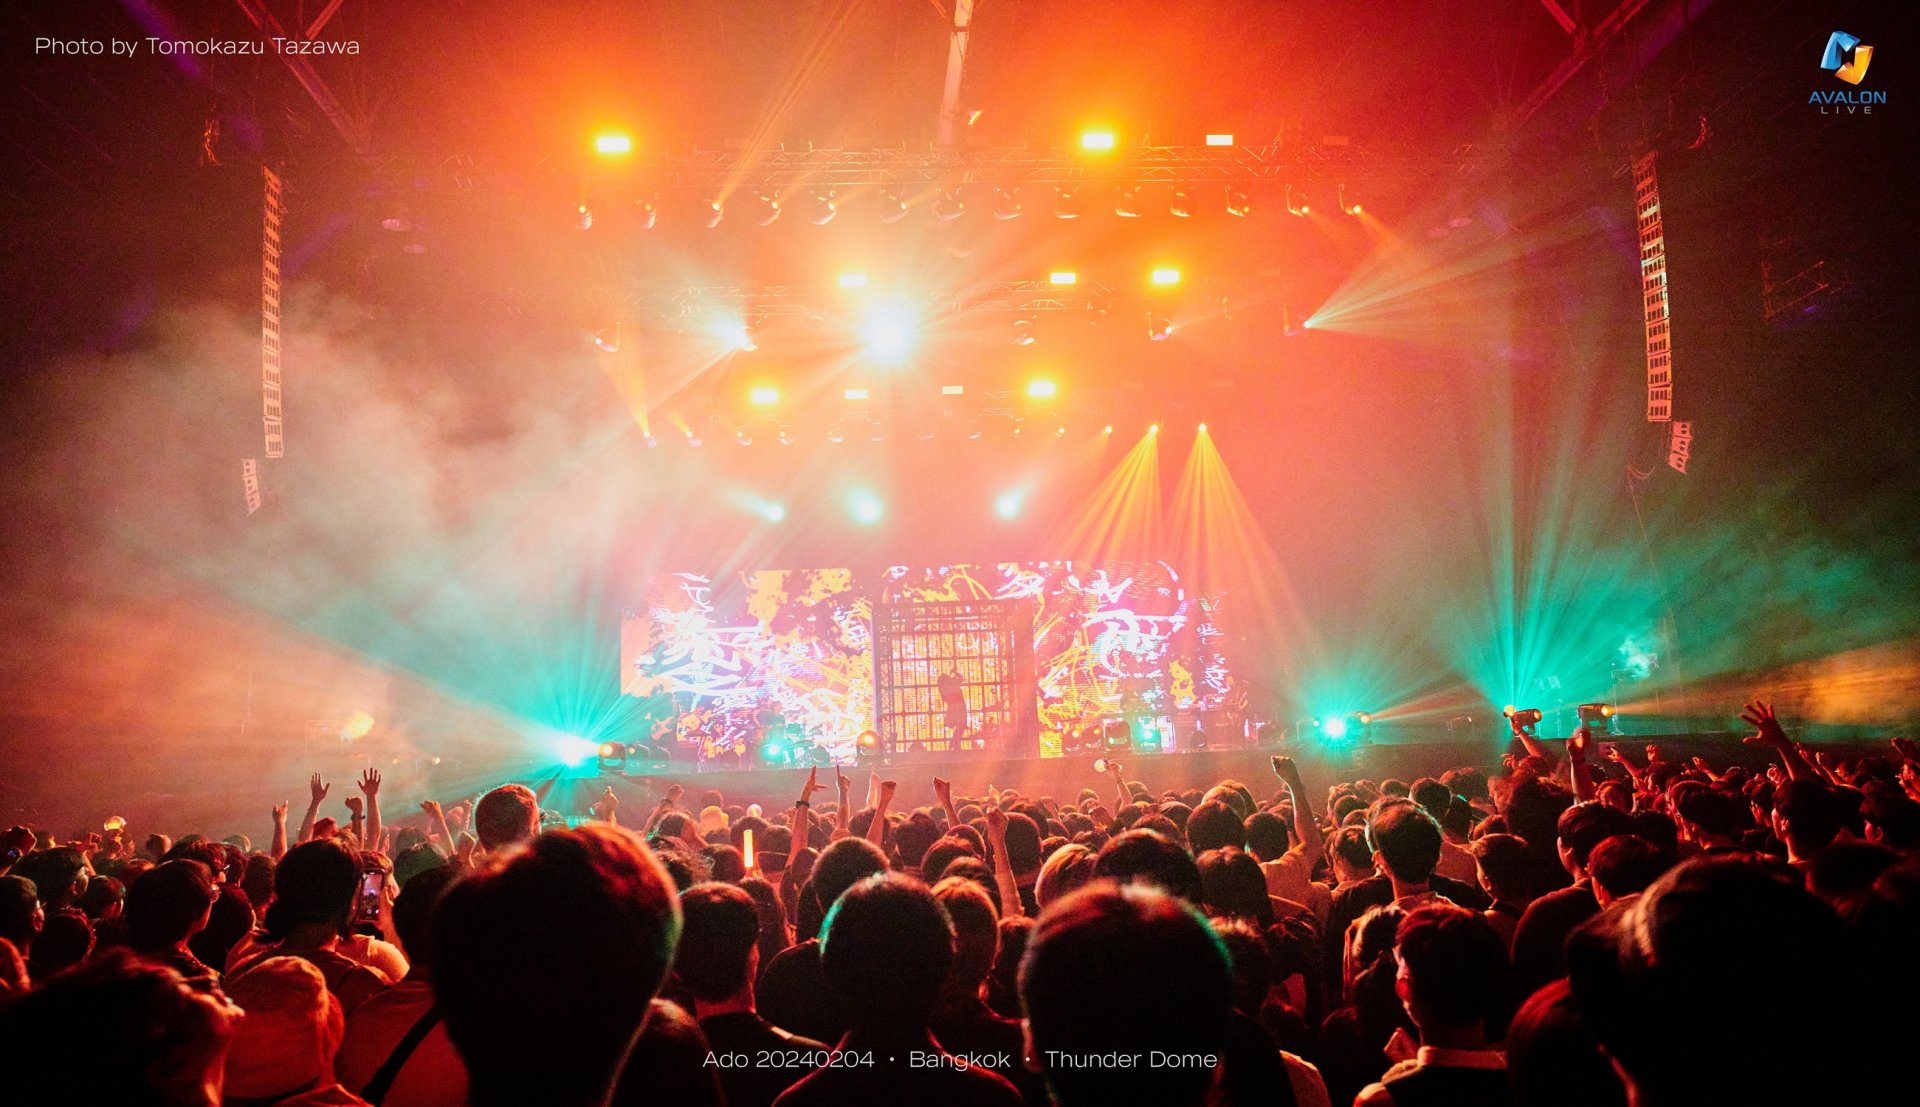 “อาโดะ” ประเดิมเวิลด์ทัวร์แรกในประเทศไทย กับ Ado THE FIRST WORLD TOUR "Wish" in Bangkok คอนเสิร์ตสุดทรงพลัง กระแทกใจคนฟังไปถึงจิตวิญญาณ! 